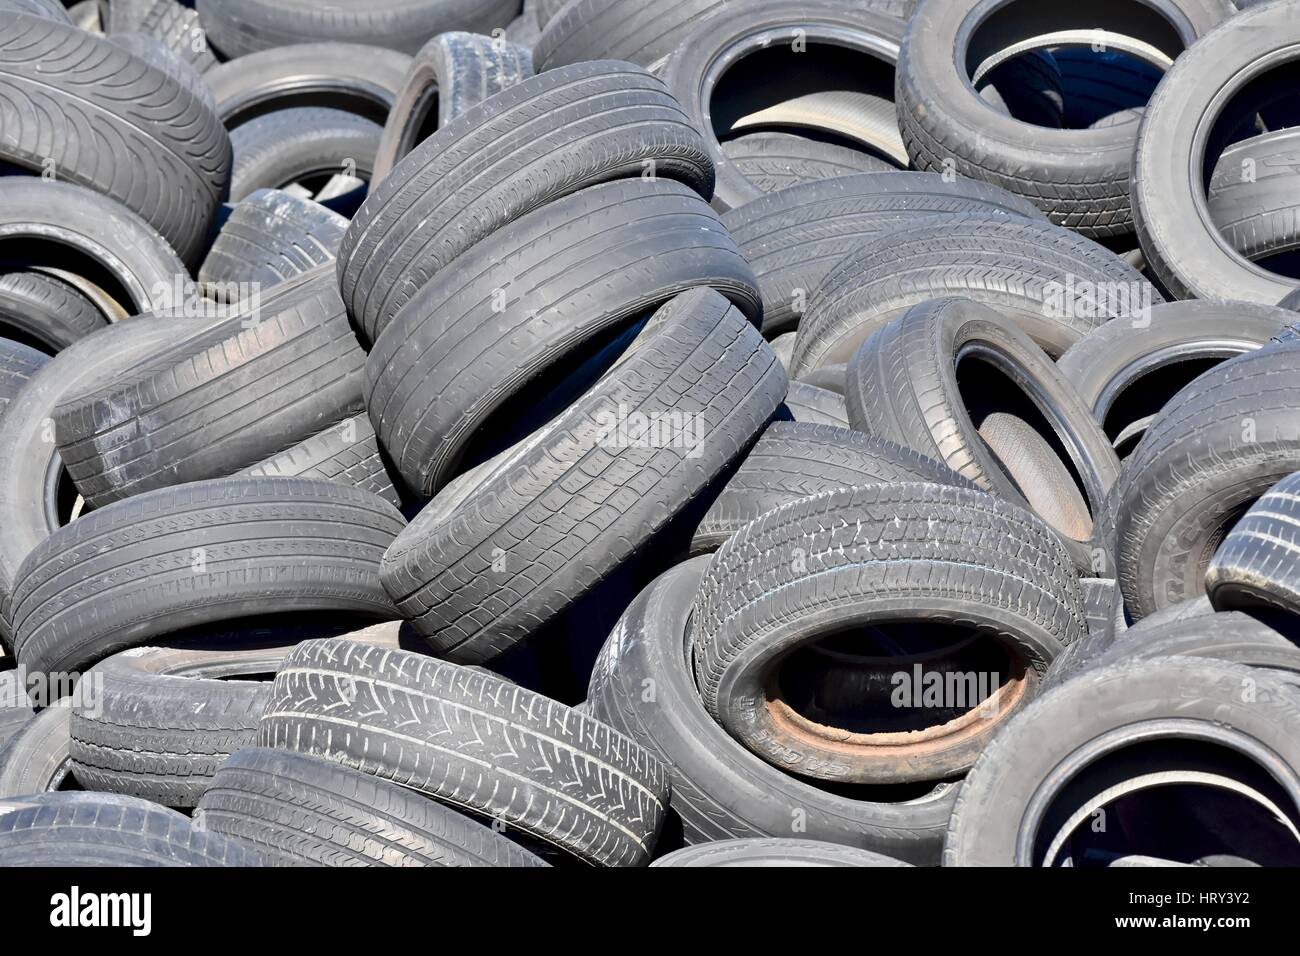 Cimetière des pneus usagés Banque D'Images